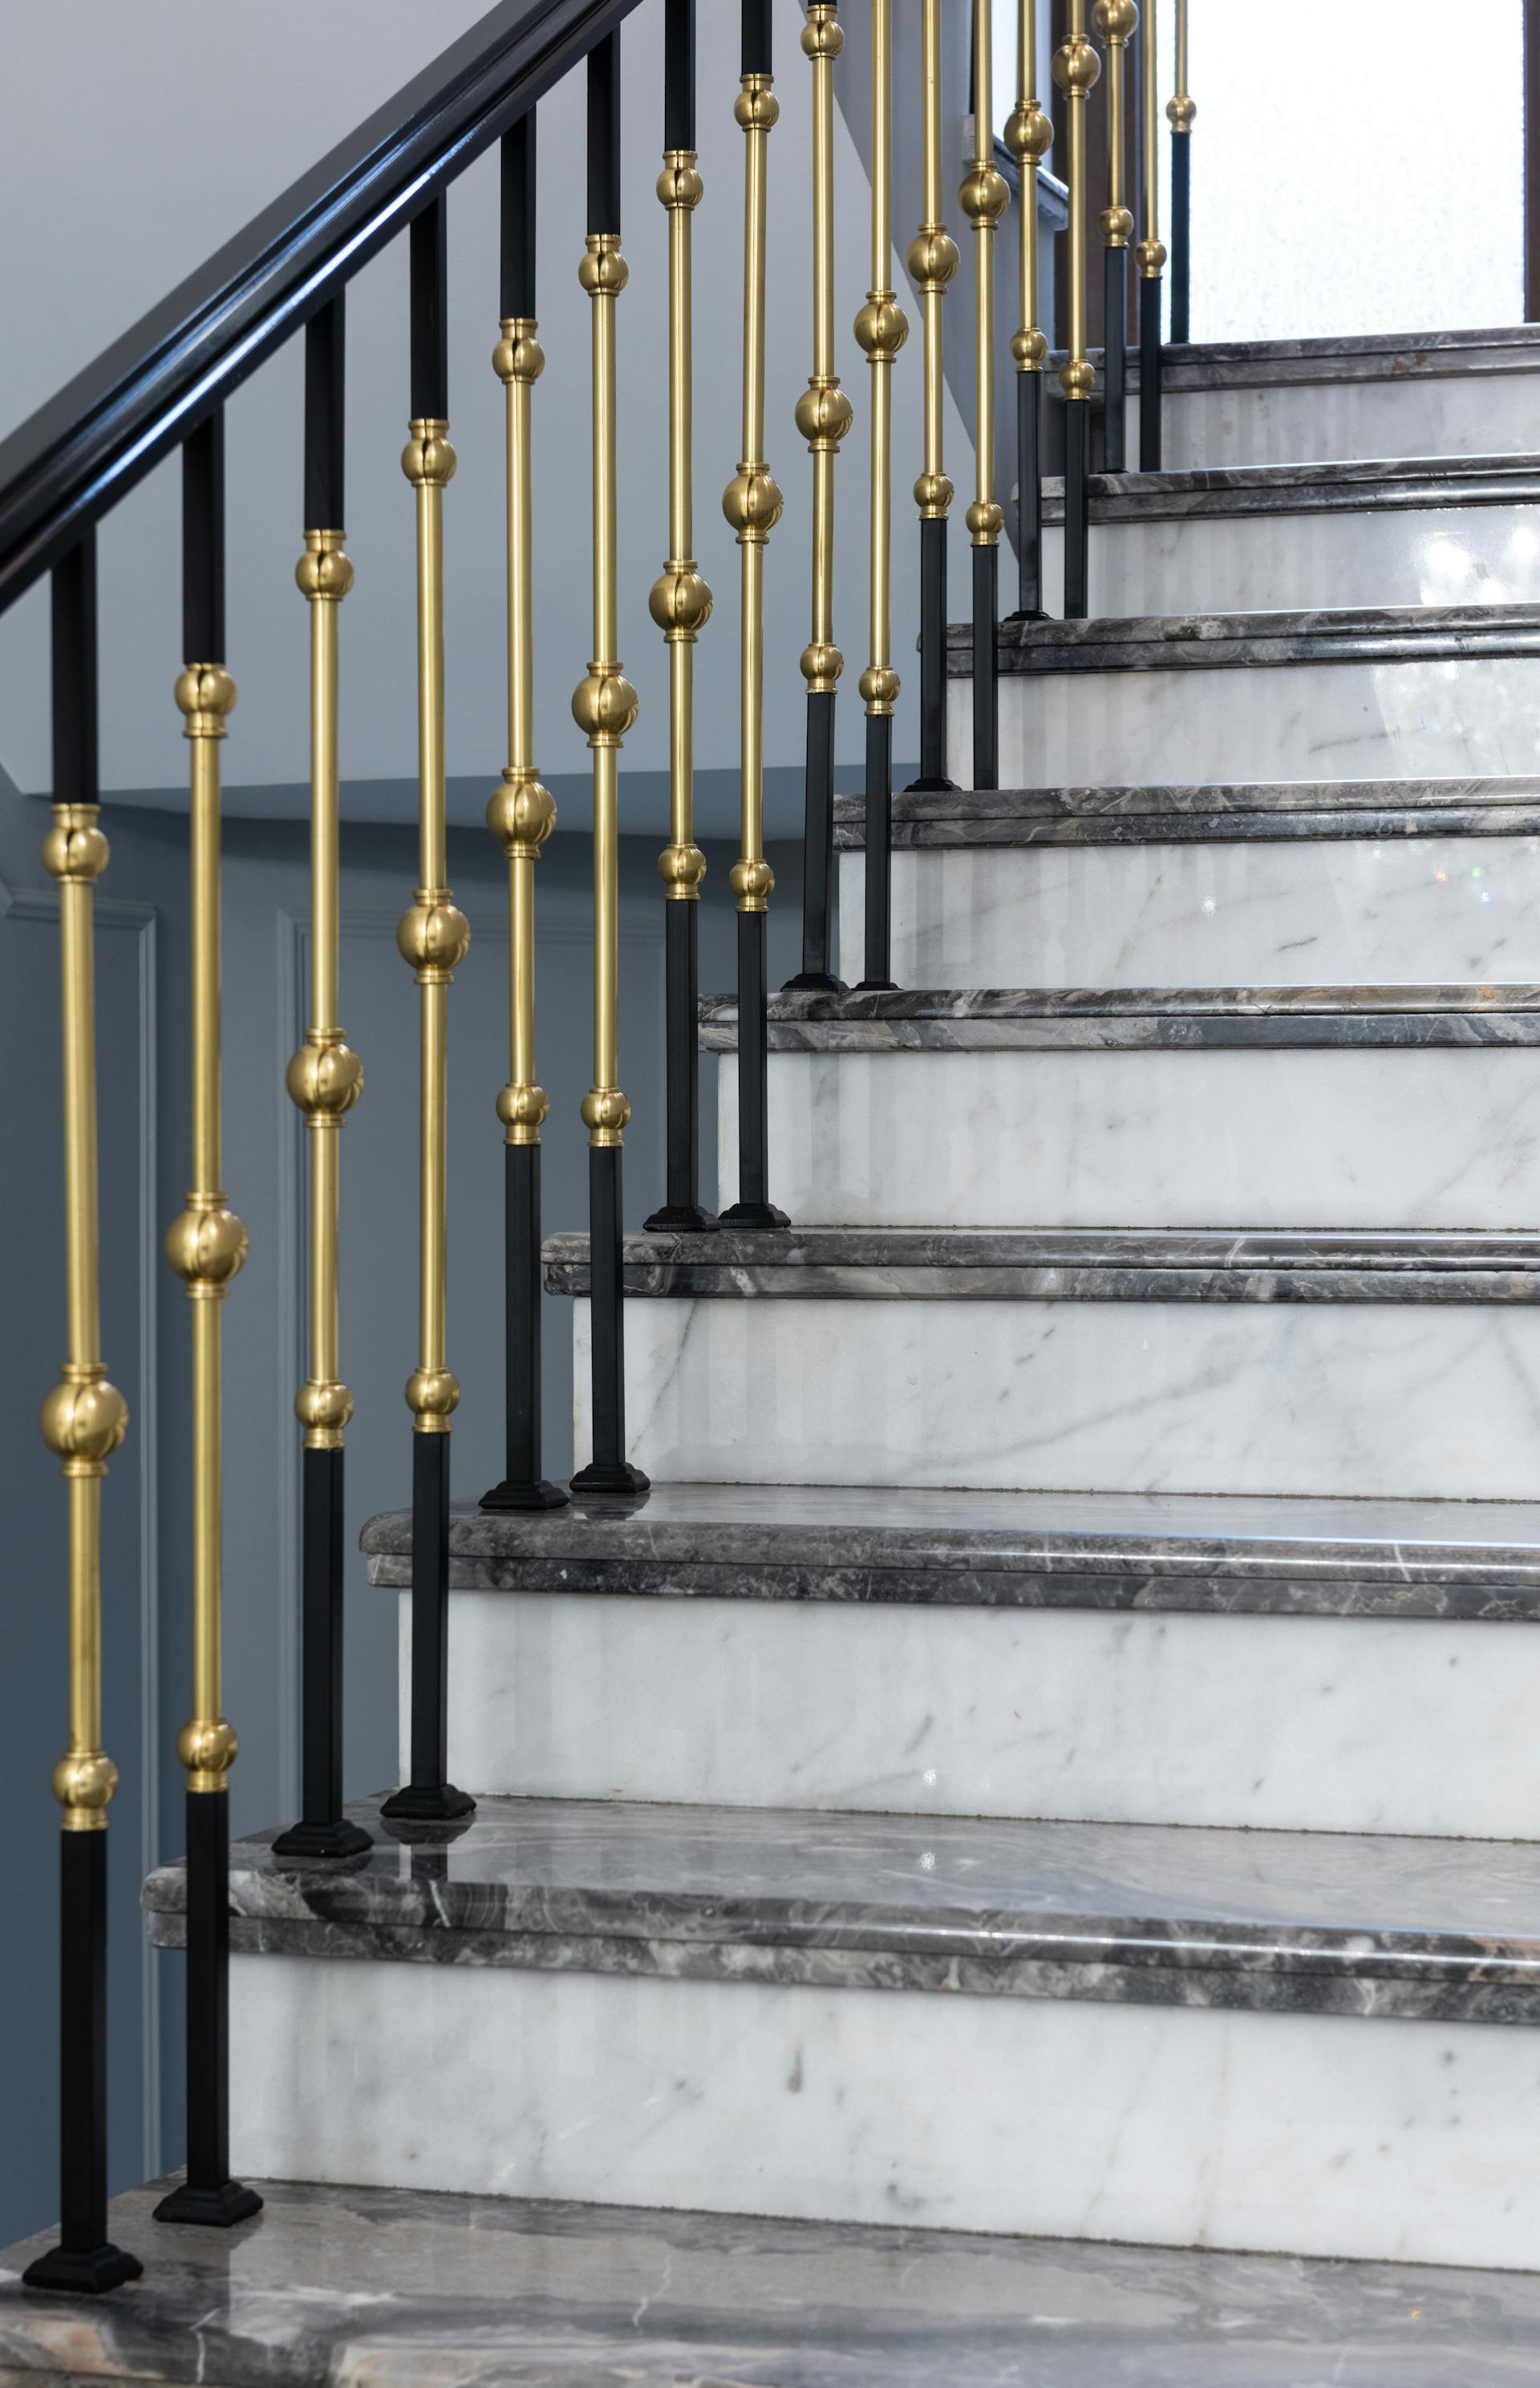 Un escalier avec une rampe en métal | Source : Pexels